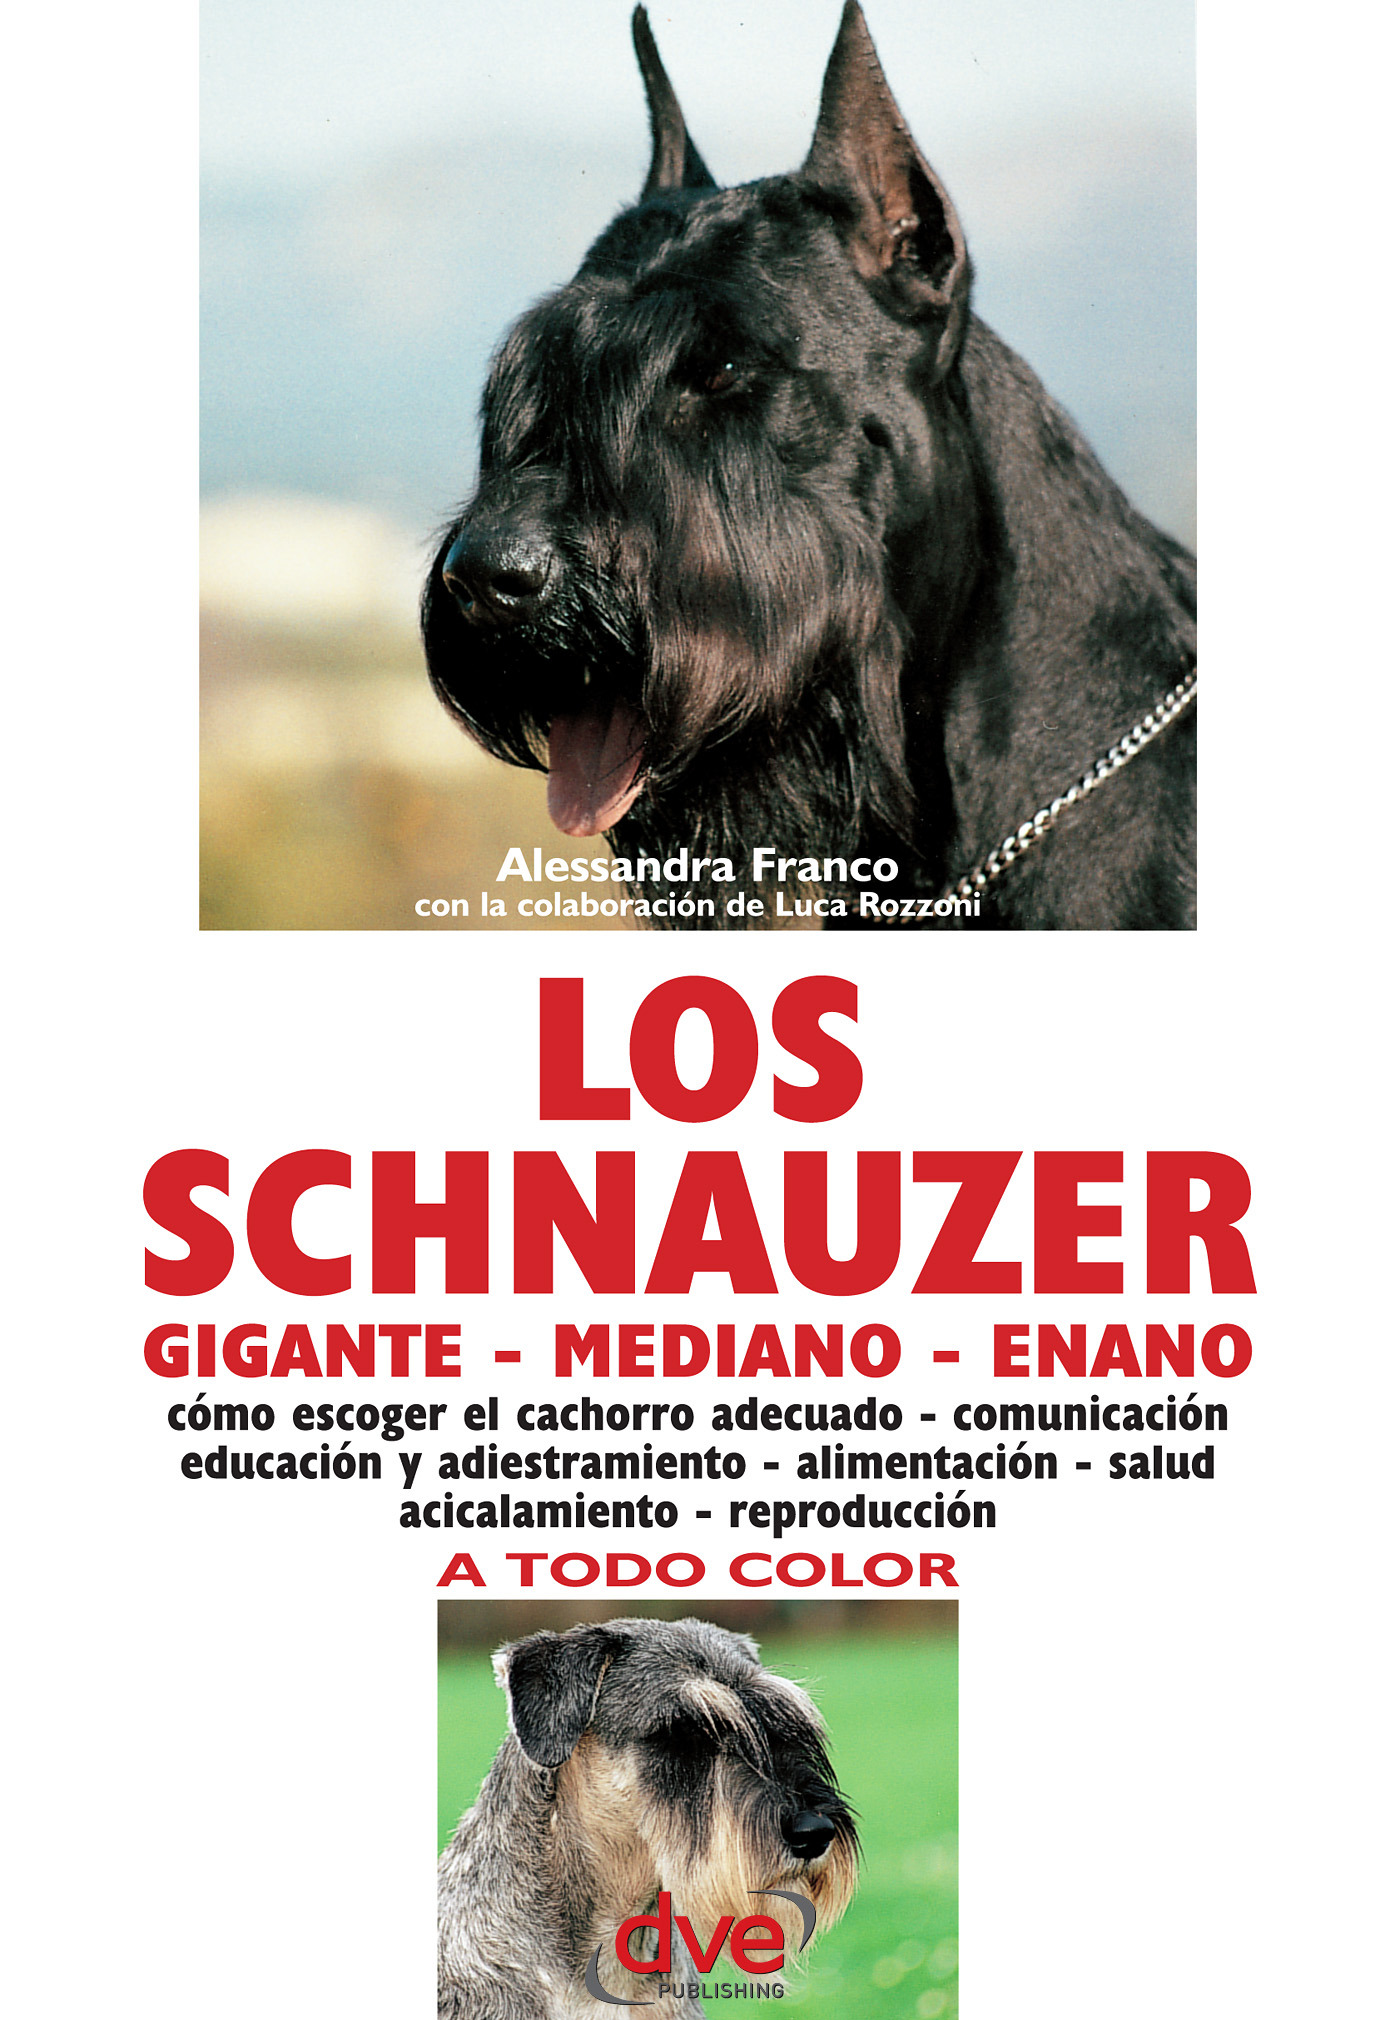 Franco, Alessandra - Los schnauzer: cómo escoger el cachorro adecuado - comunicación educación y adiestramiento - alimentación - salud acicalamiento - reproducción, ebook